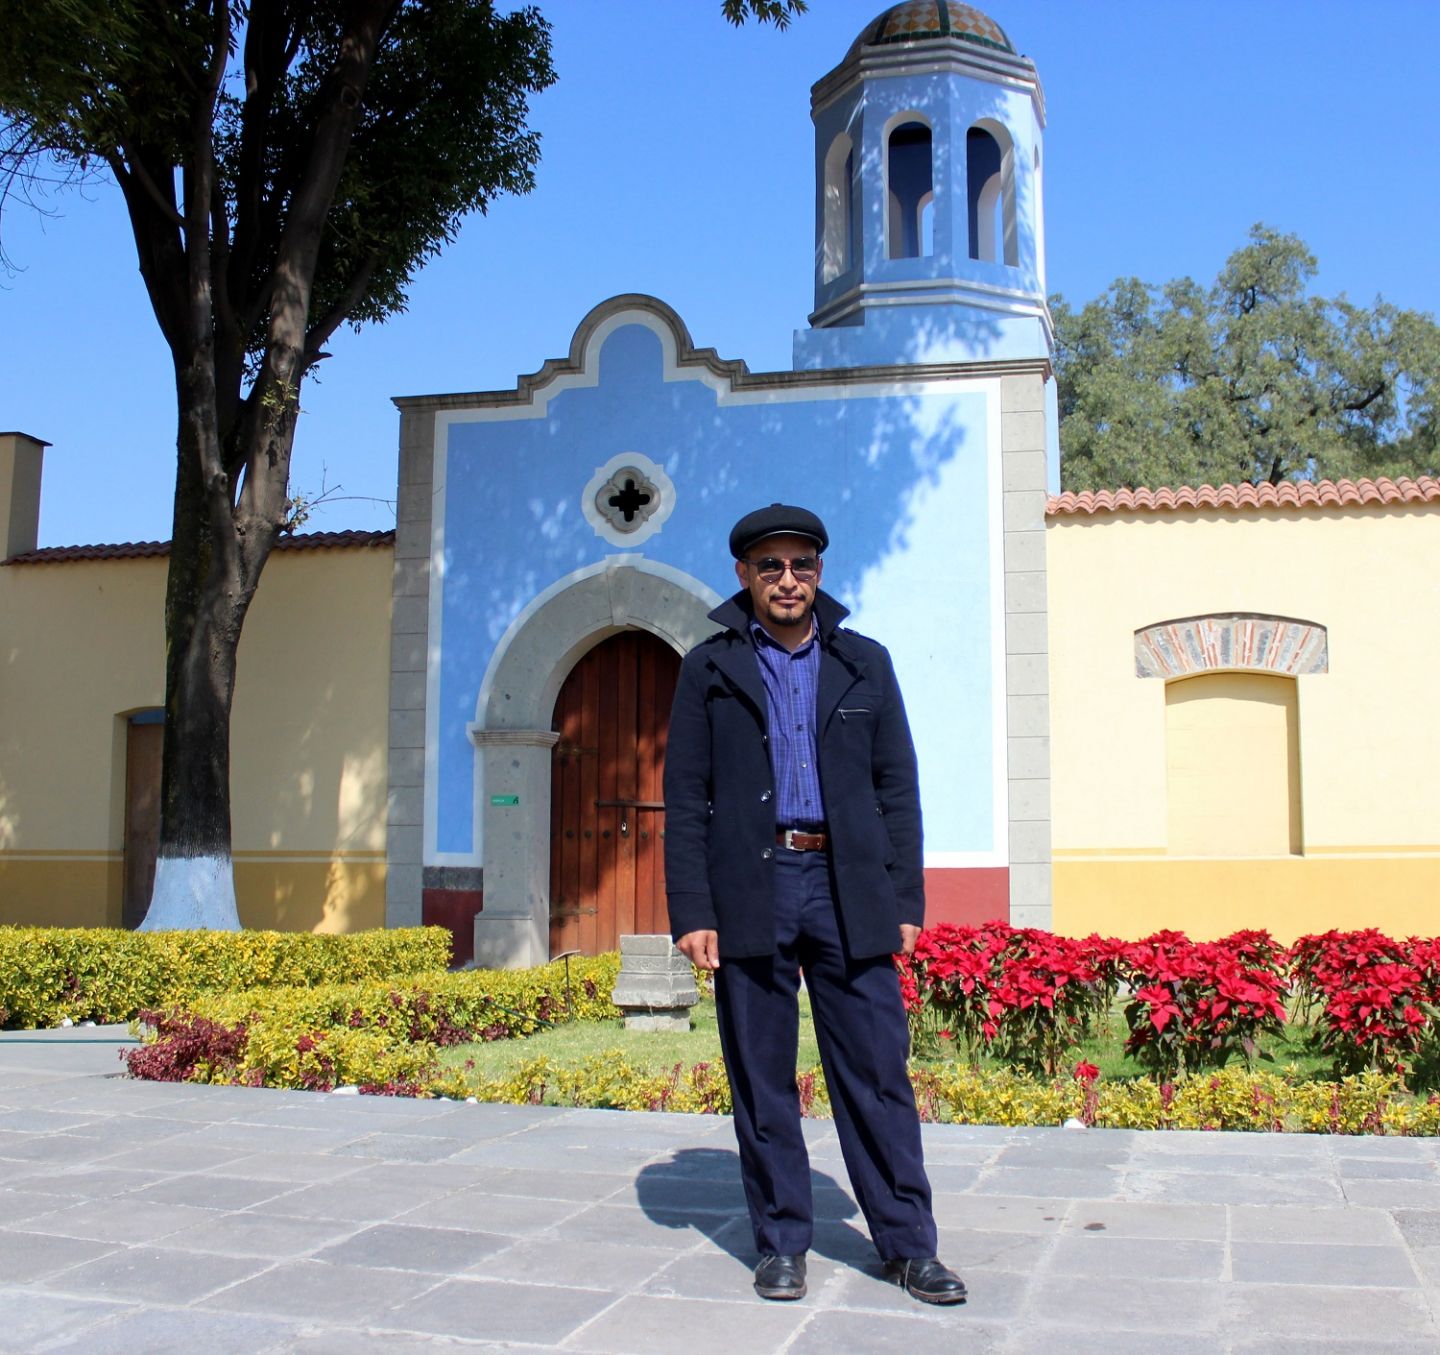 Pintor chimalhuacano destaca en exposiciones internacionales